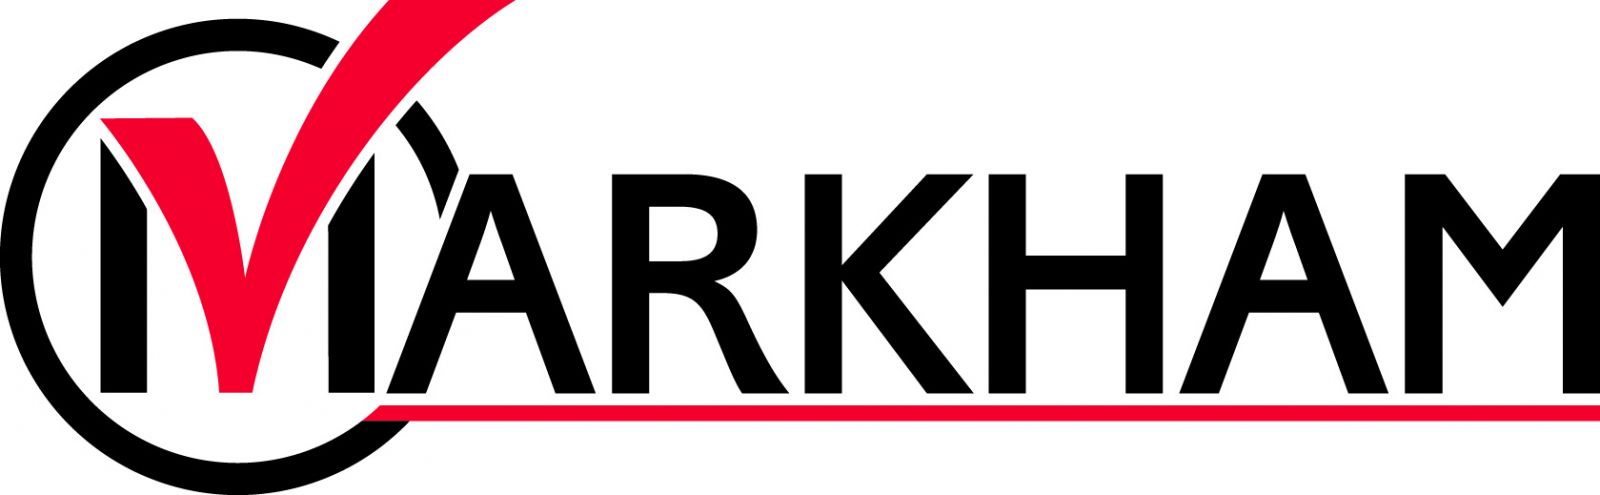 City-of-Markham-Logo.jpg